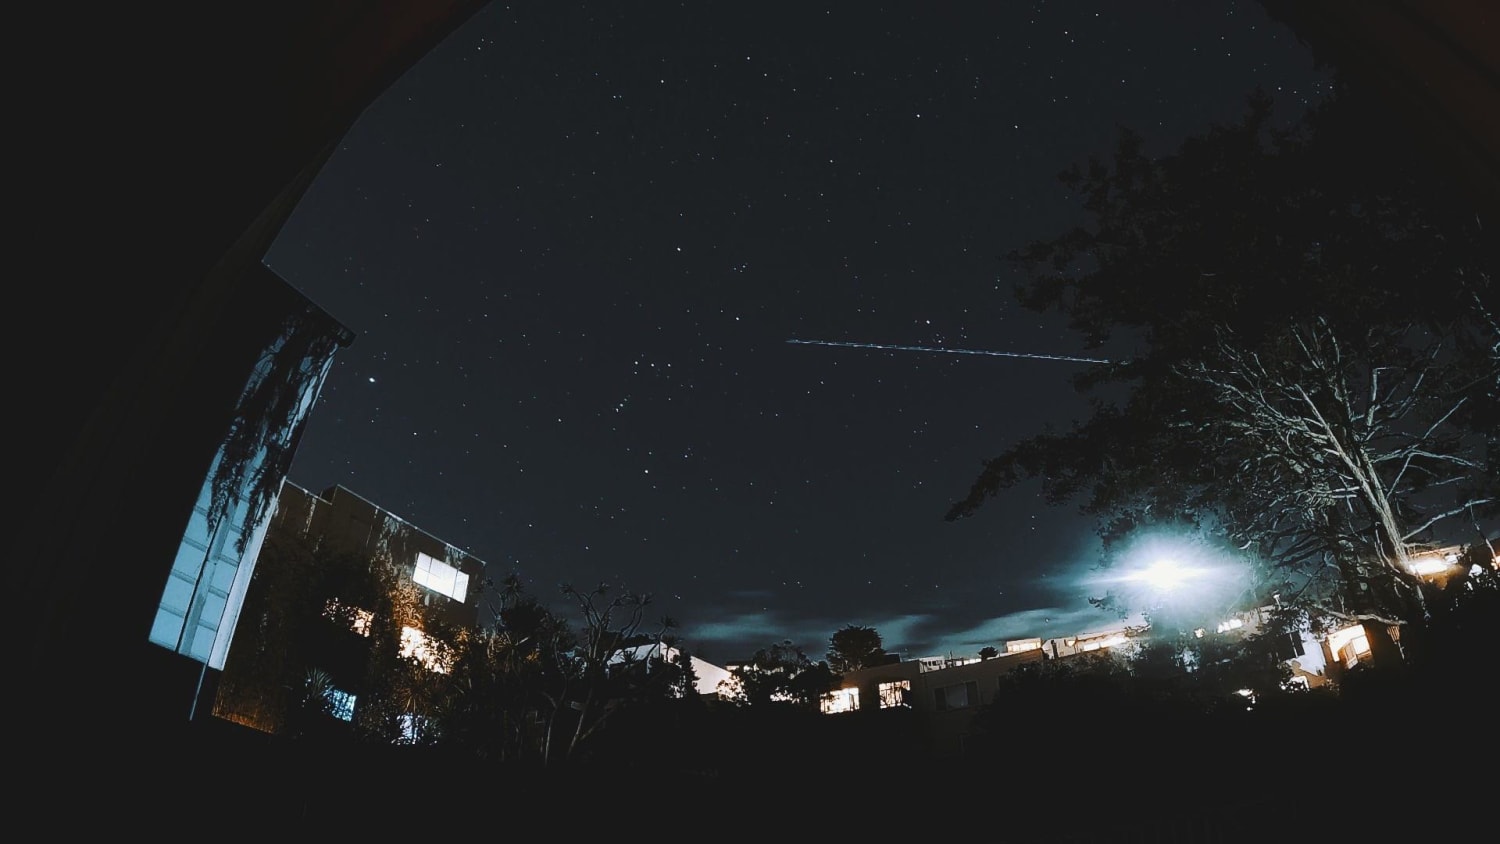 Orion shooting bullets. GoPro Hero9 still from 30s shutter night lapse.